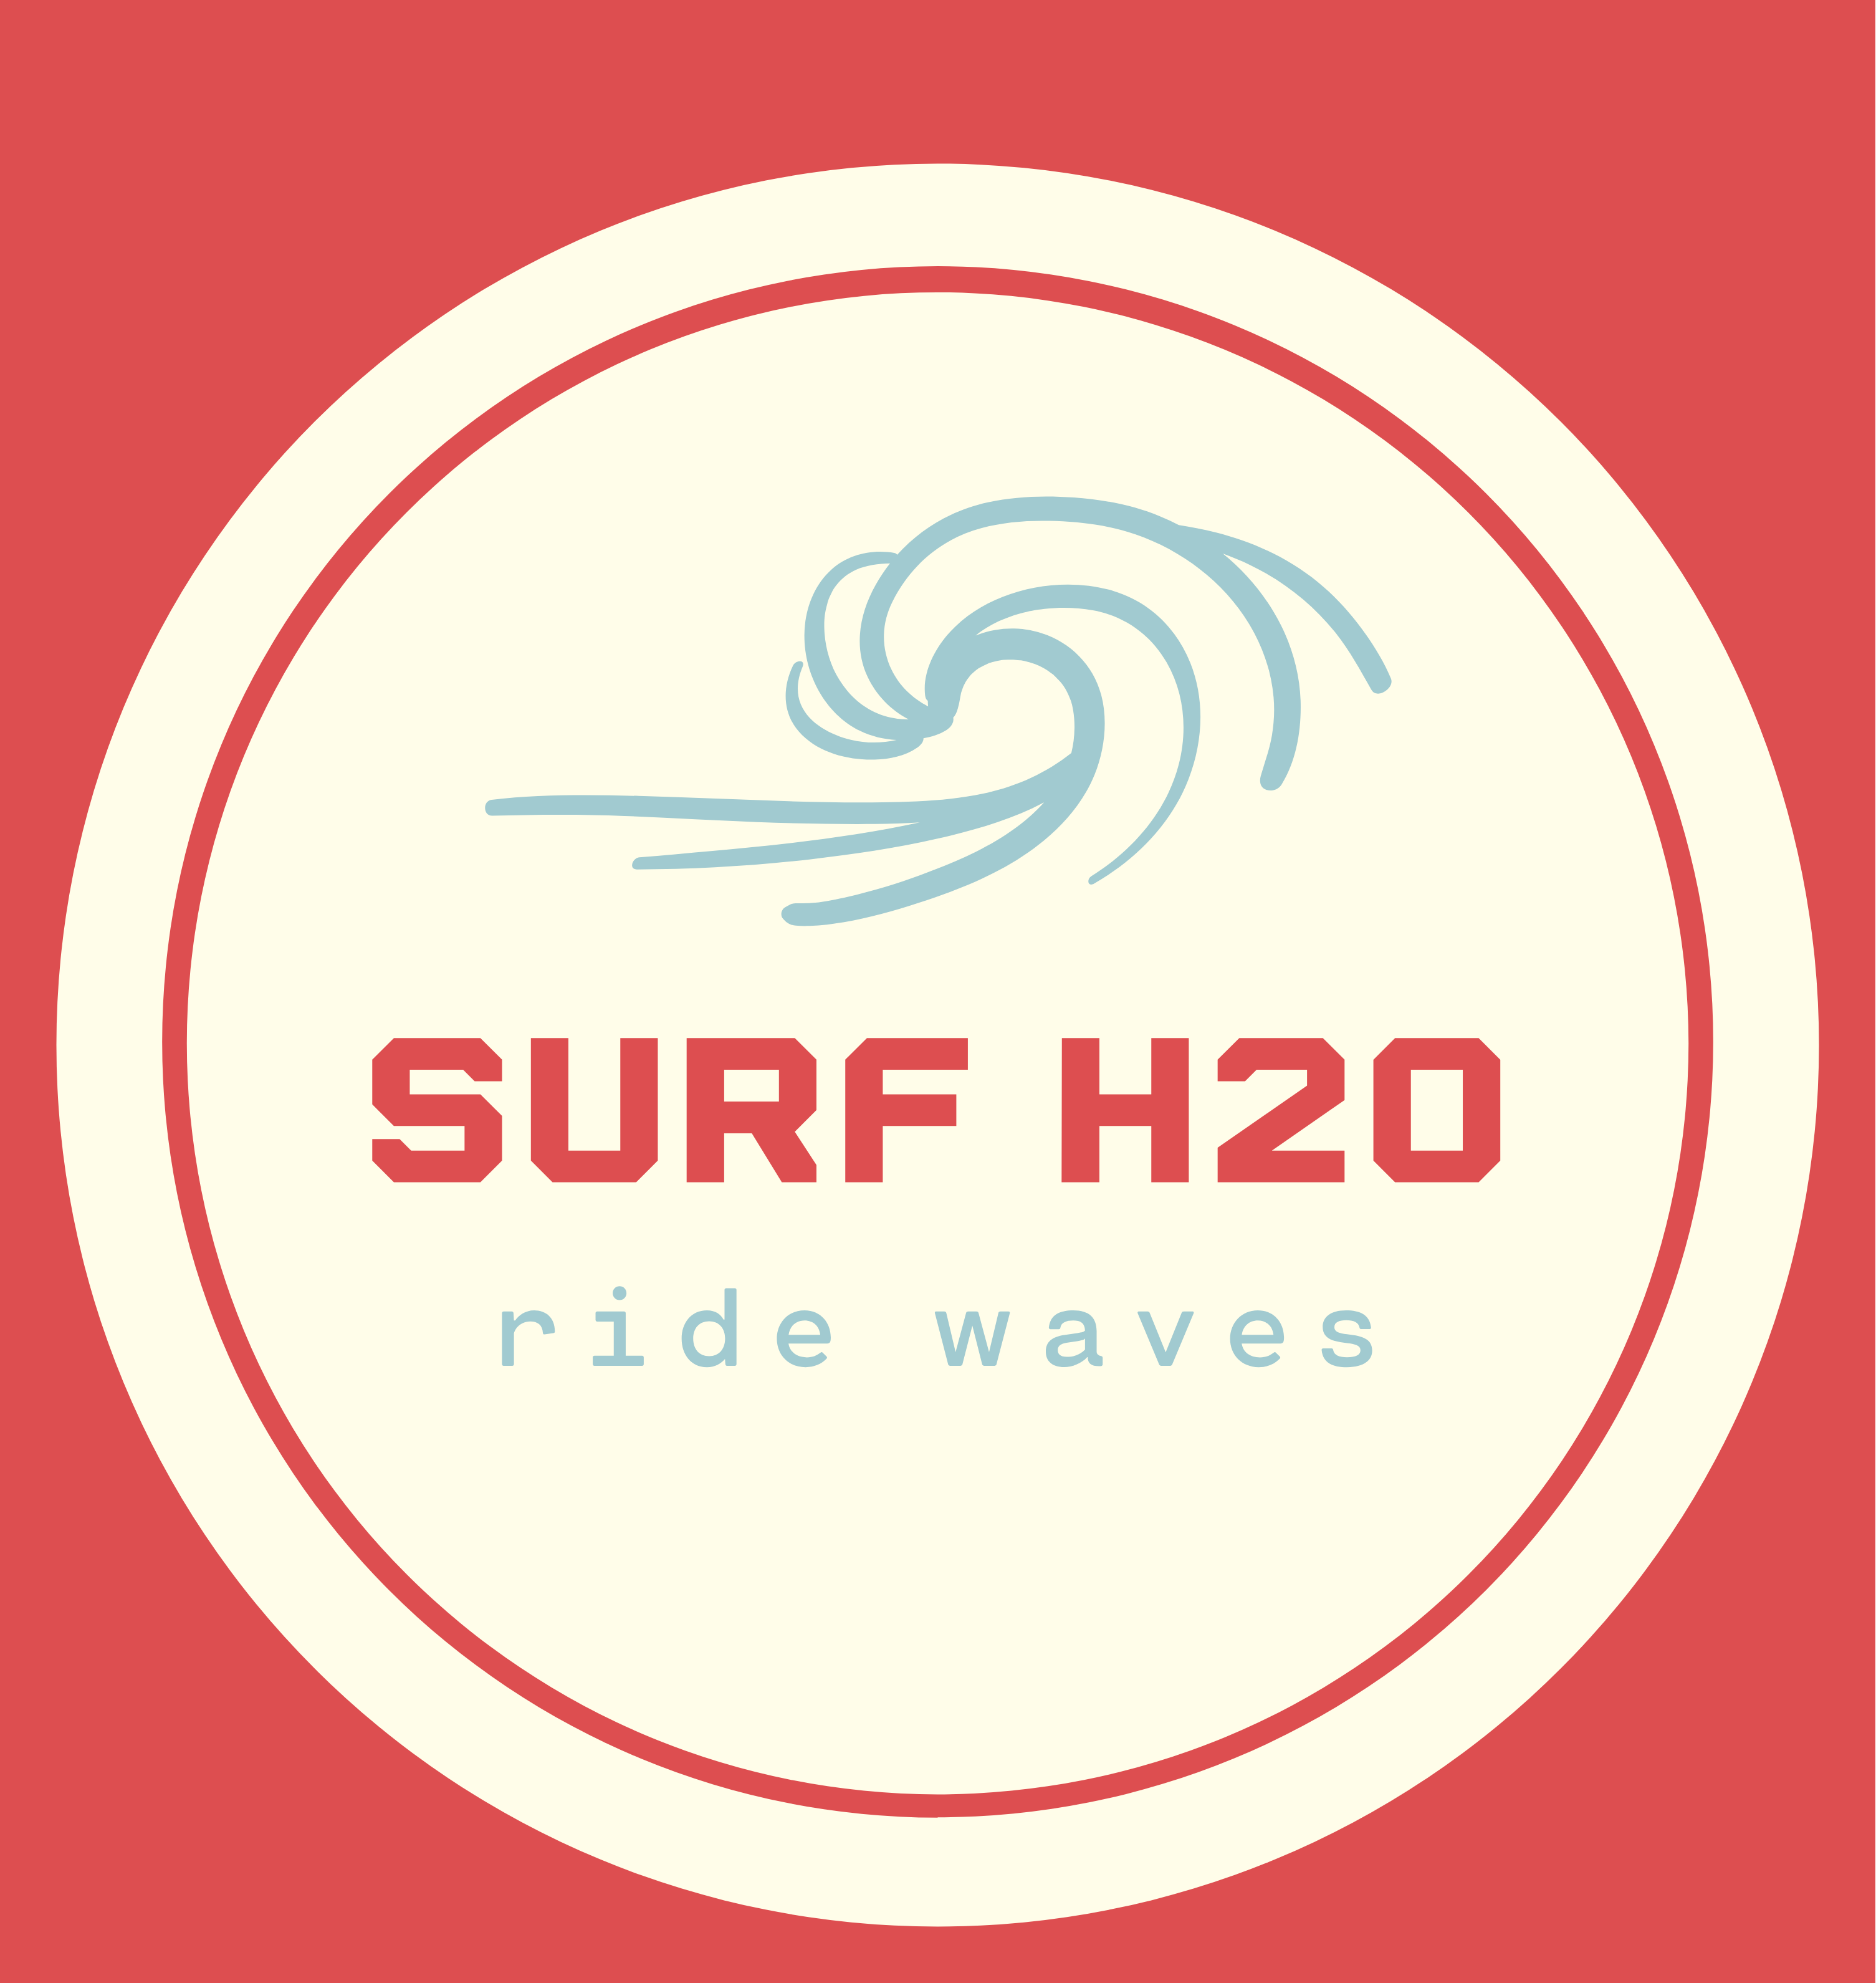 Surf H20